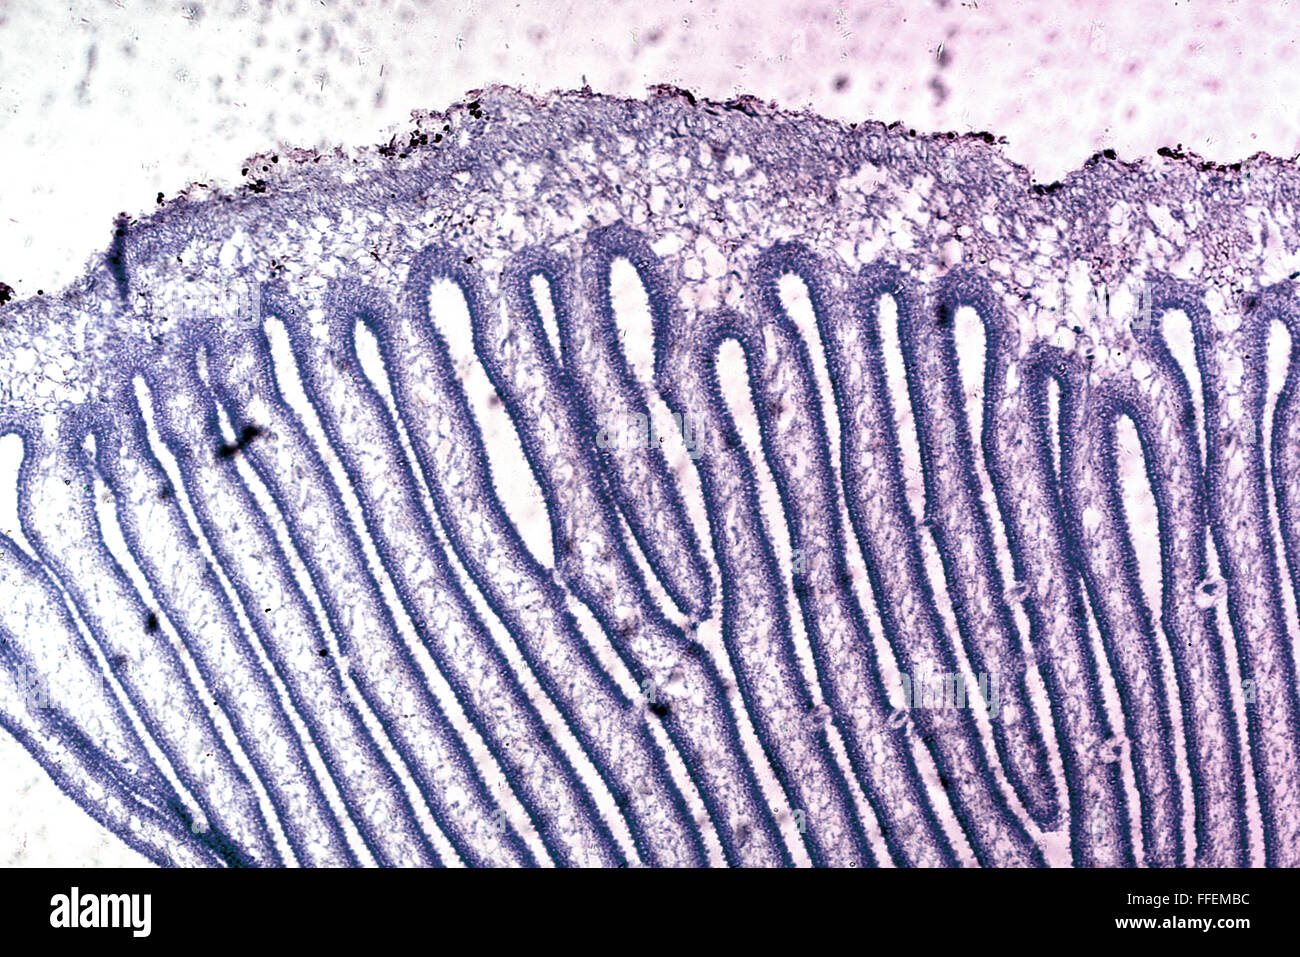 Microscopic image Stock Photo